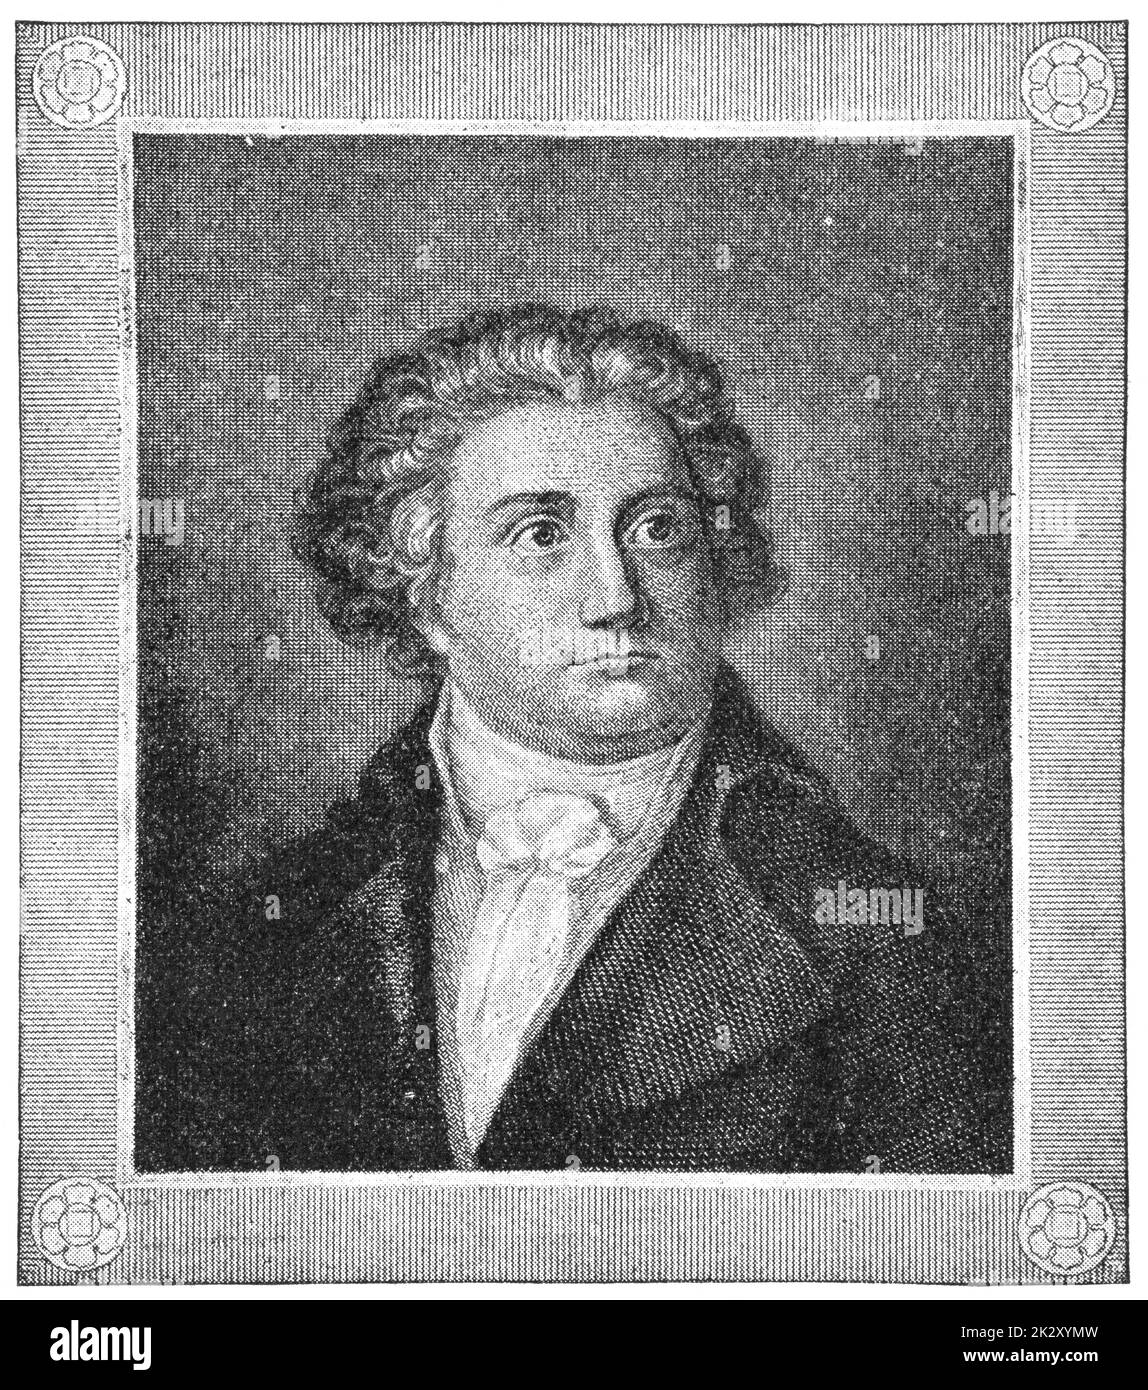 Portrait d'août Wilhelm Iffland - un acteur allemand et auteur dramatique. Illustration du 19e siècle. Arrière-plan blanc. Banque D'Images